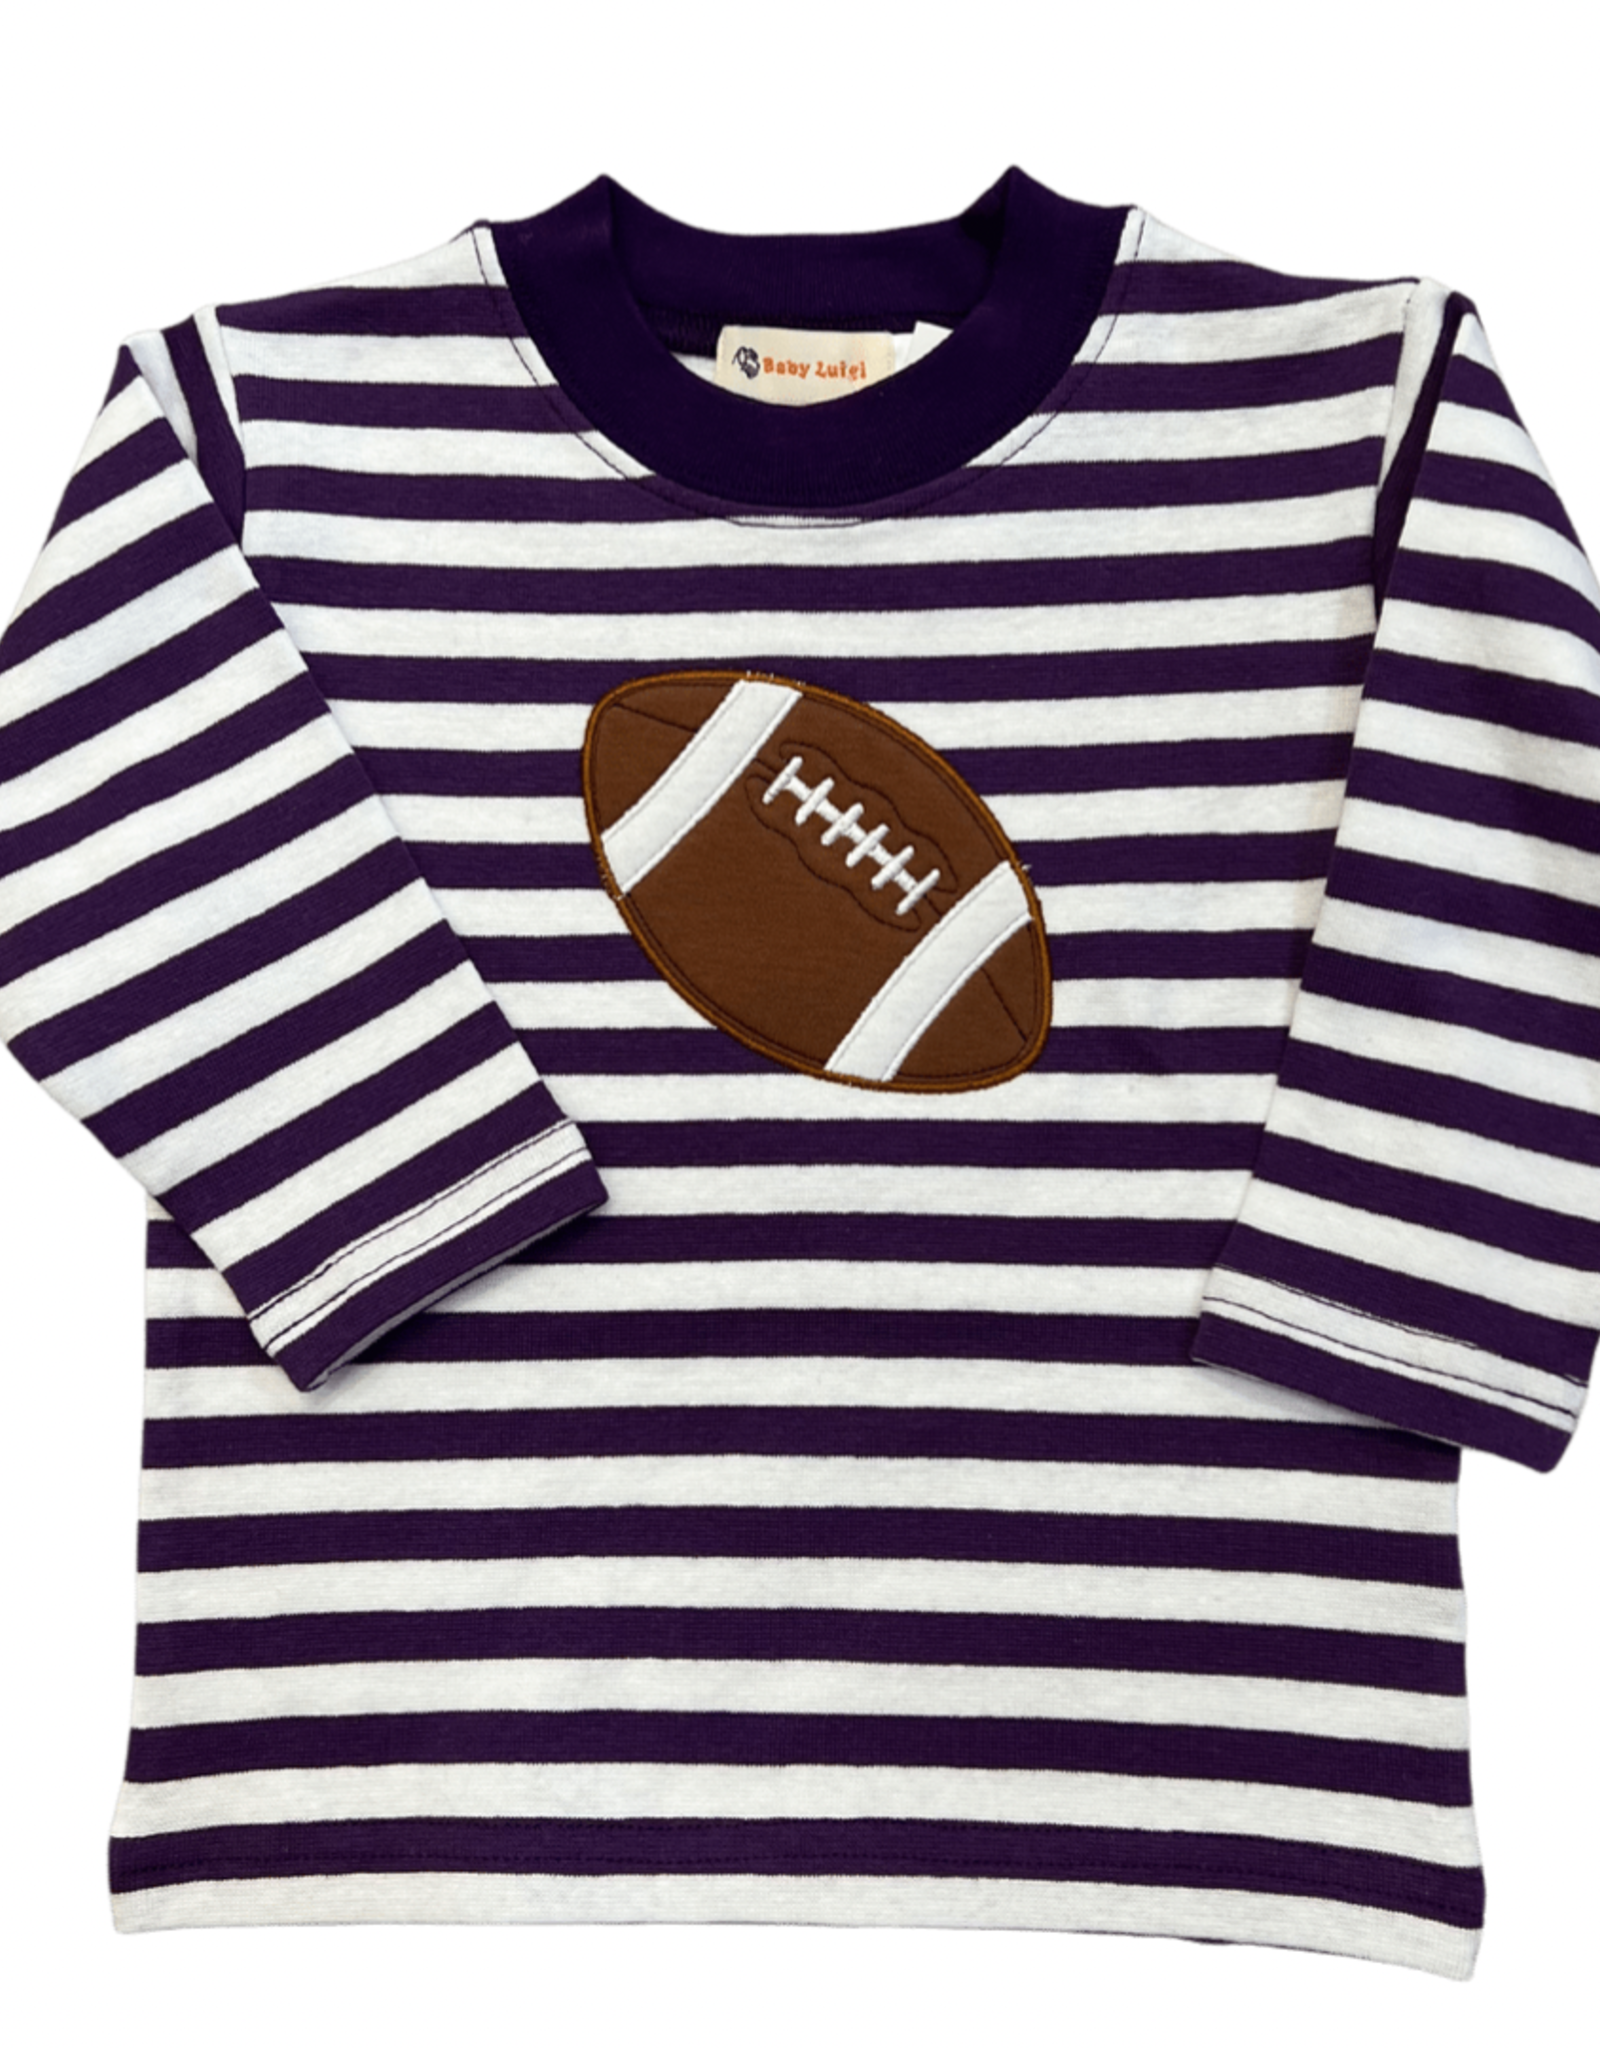 Luigi Purple Stripe Long Sleeve Tee with Football